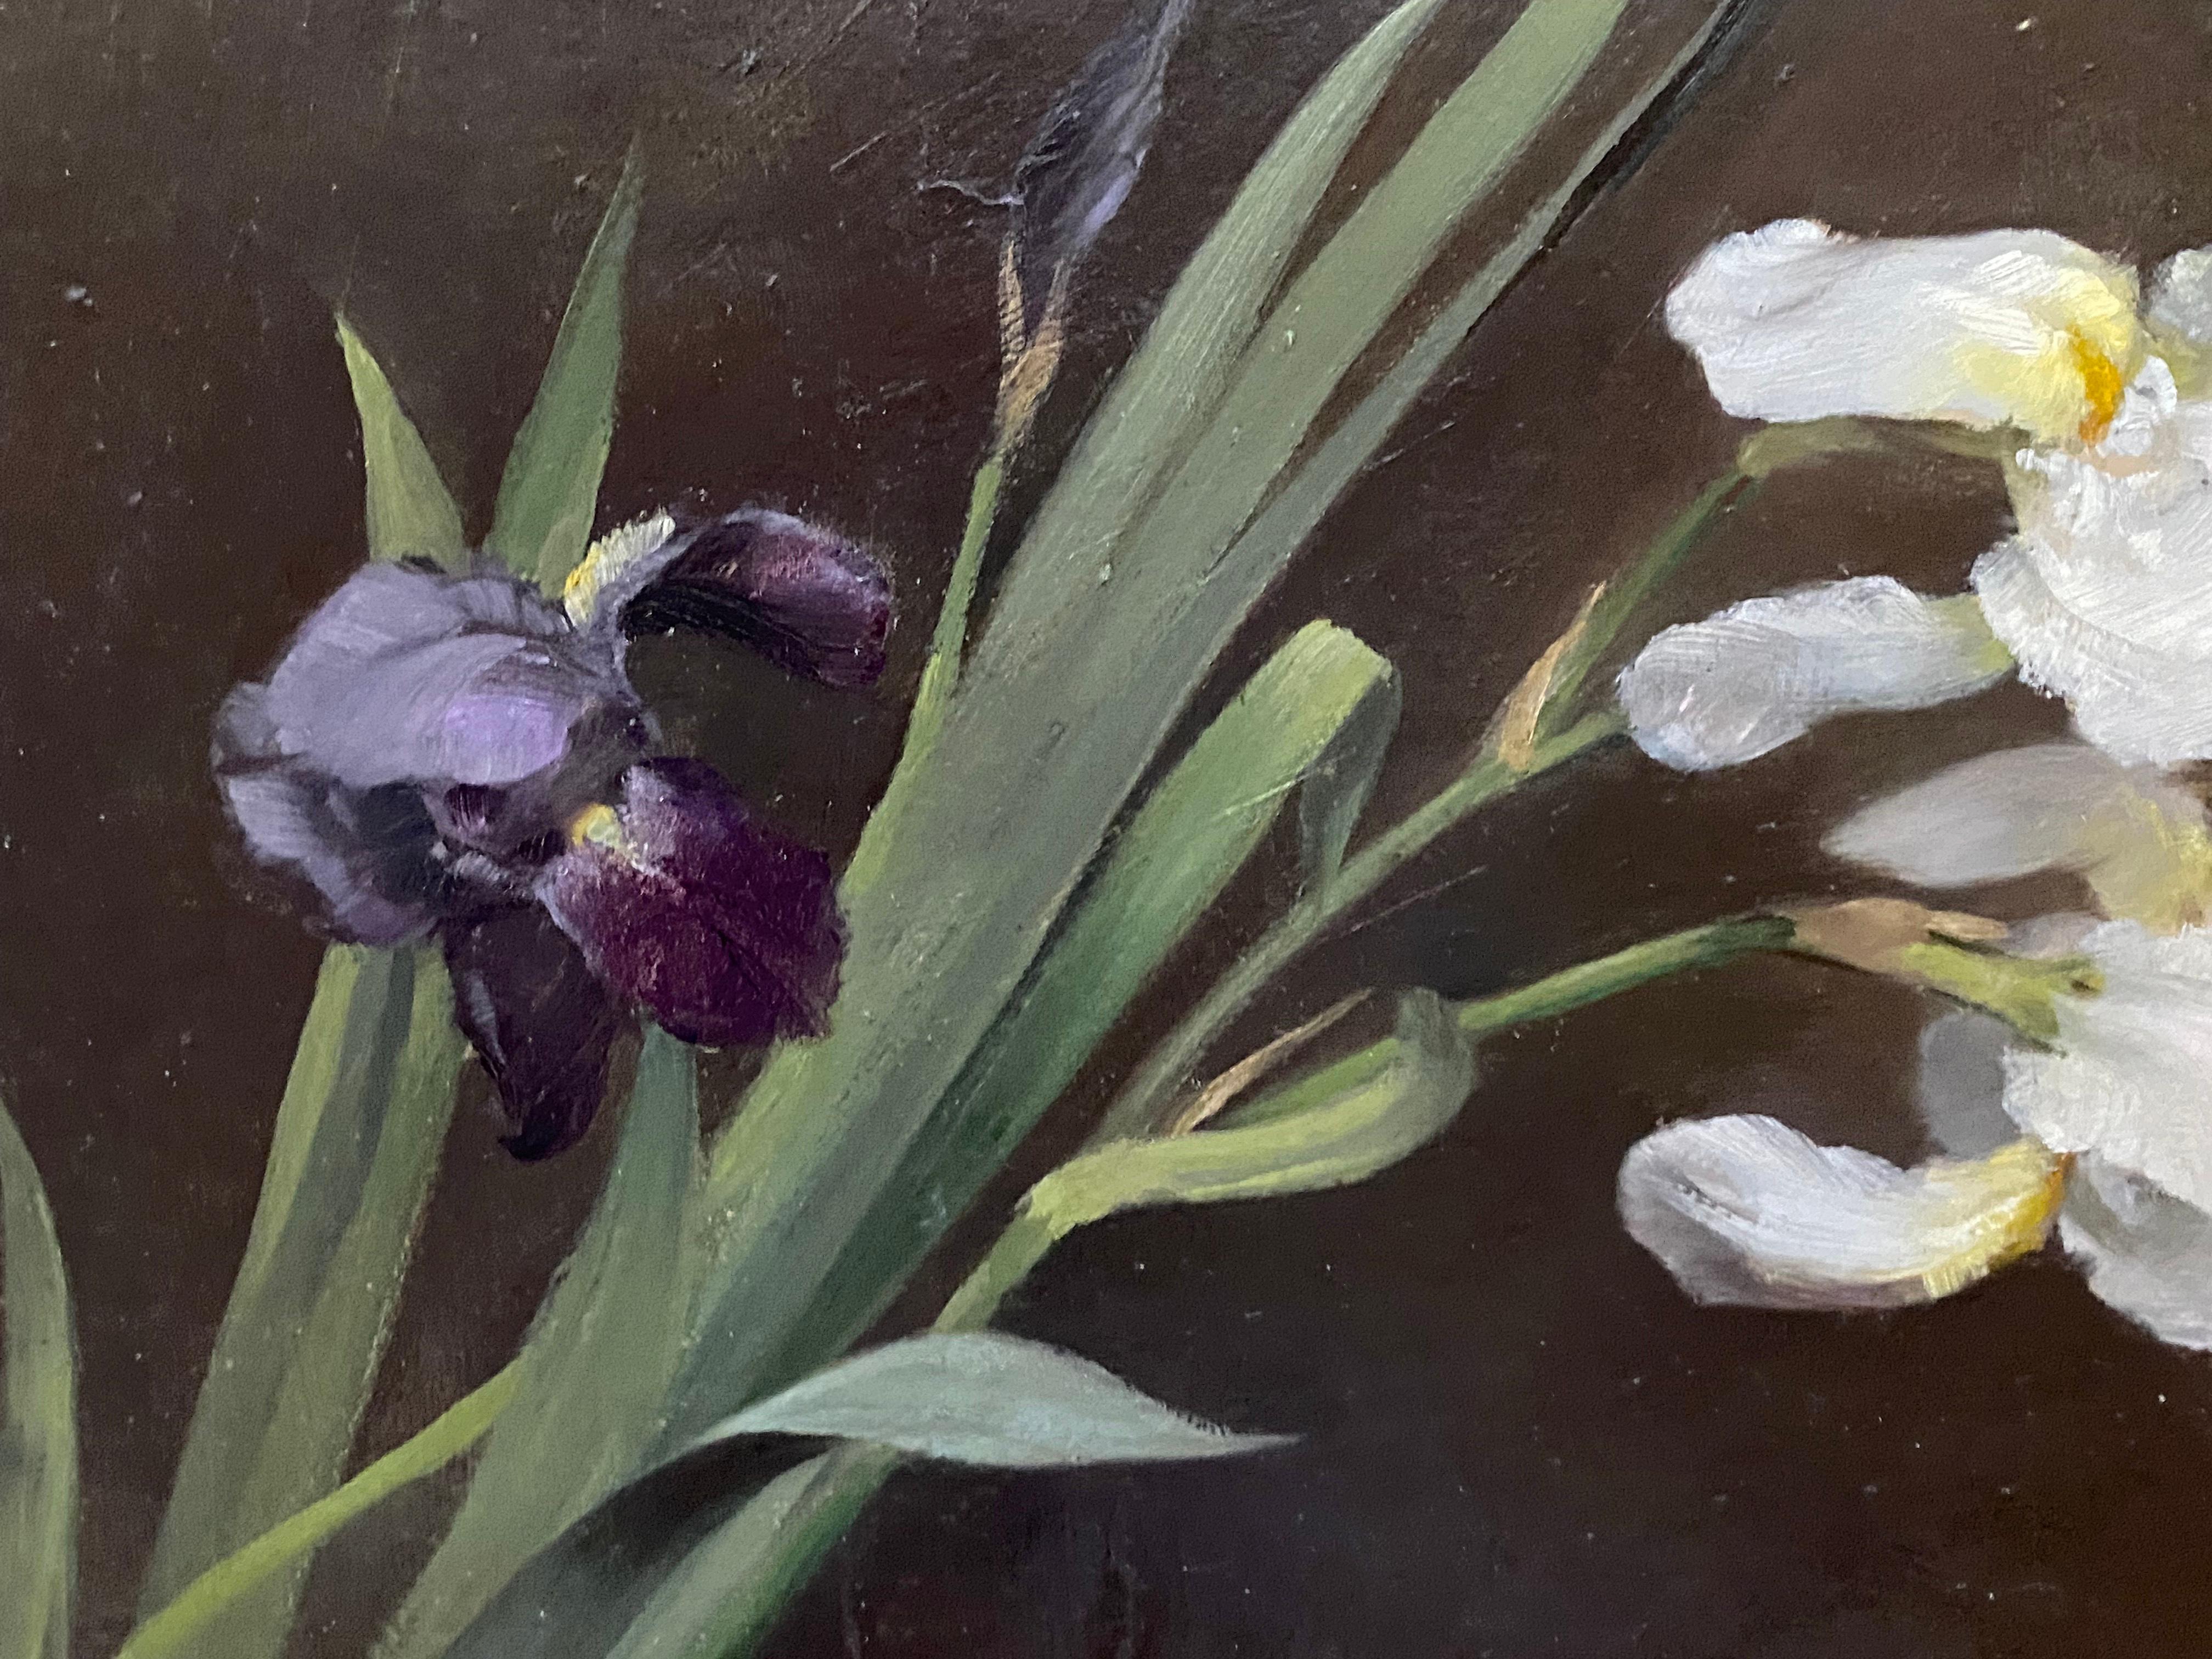 Fannie Burr était une peintre très accomplie et l'une des premières femmes artistes américaines !  Cette étude florale très contemporaine, fraîche et attrayante a été réalisée vers 1895 ! Sa rareté et sa virtuosité d'exécution pourraient lui valoir